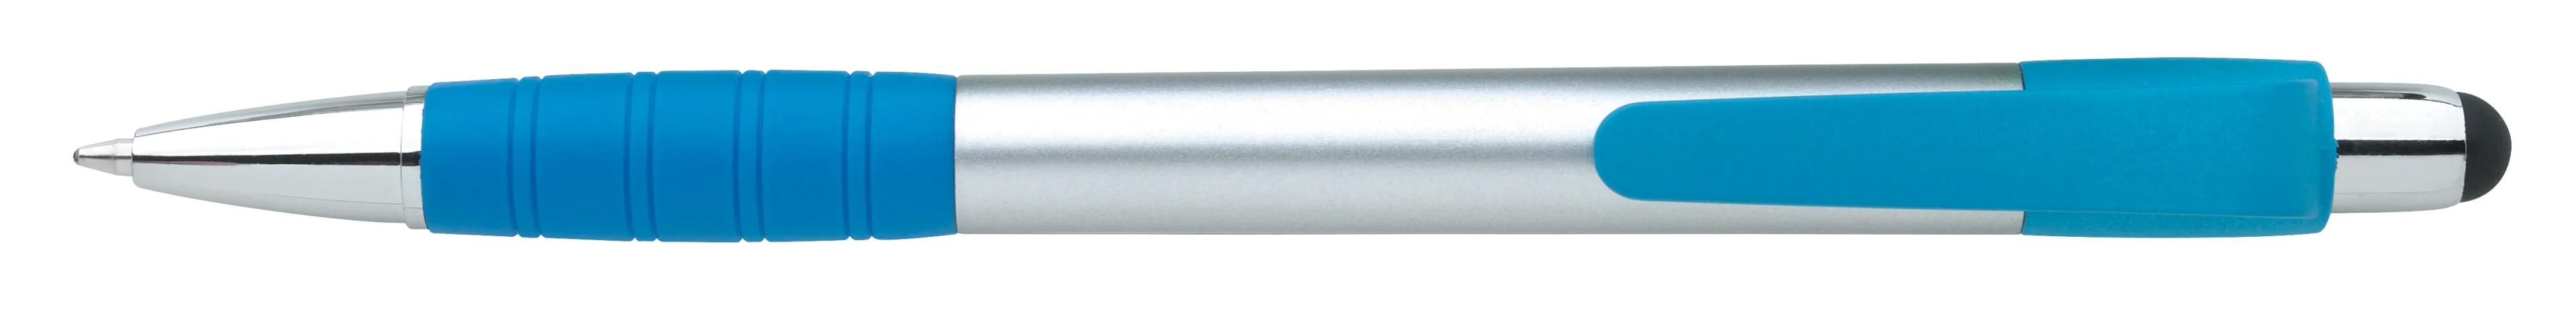 Silver Element Stylus Pen 21 of 53